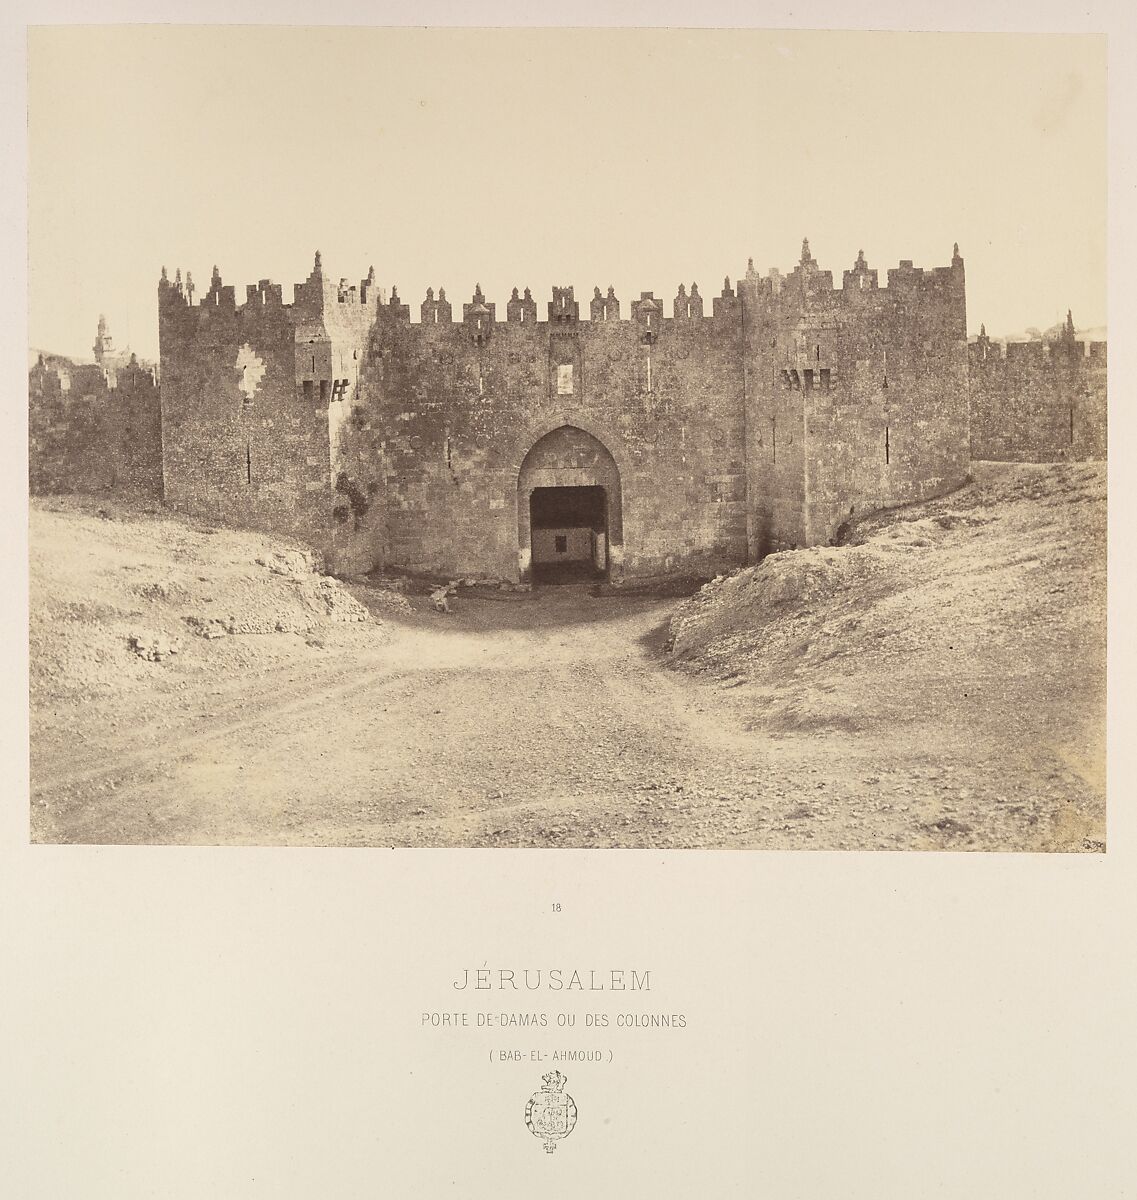 Jérusalem. Porte de Damas ou des colonnes (Bab-el-Ahmoud), Louis de Clercq (French, 1837–1901), Albumen silver print from paper negative 